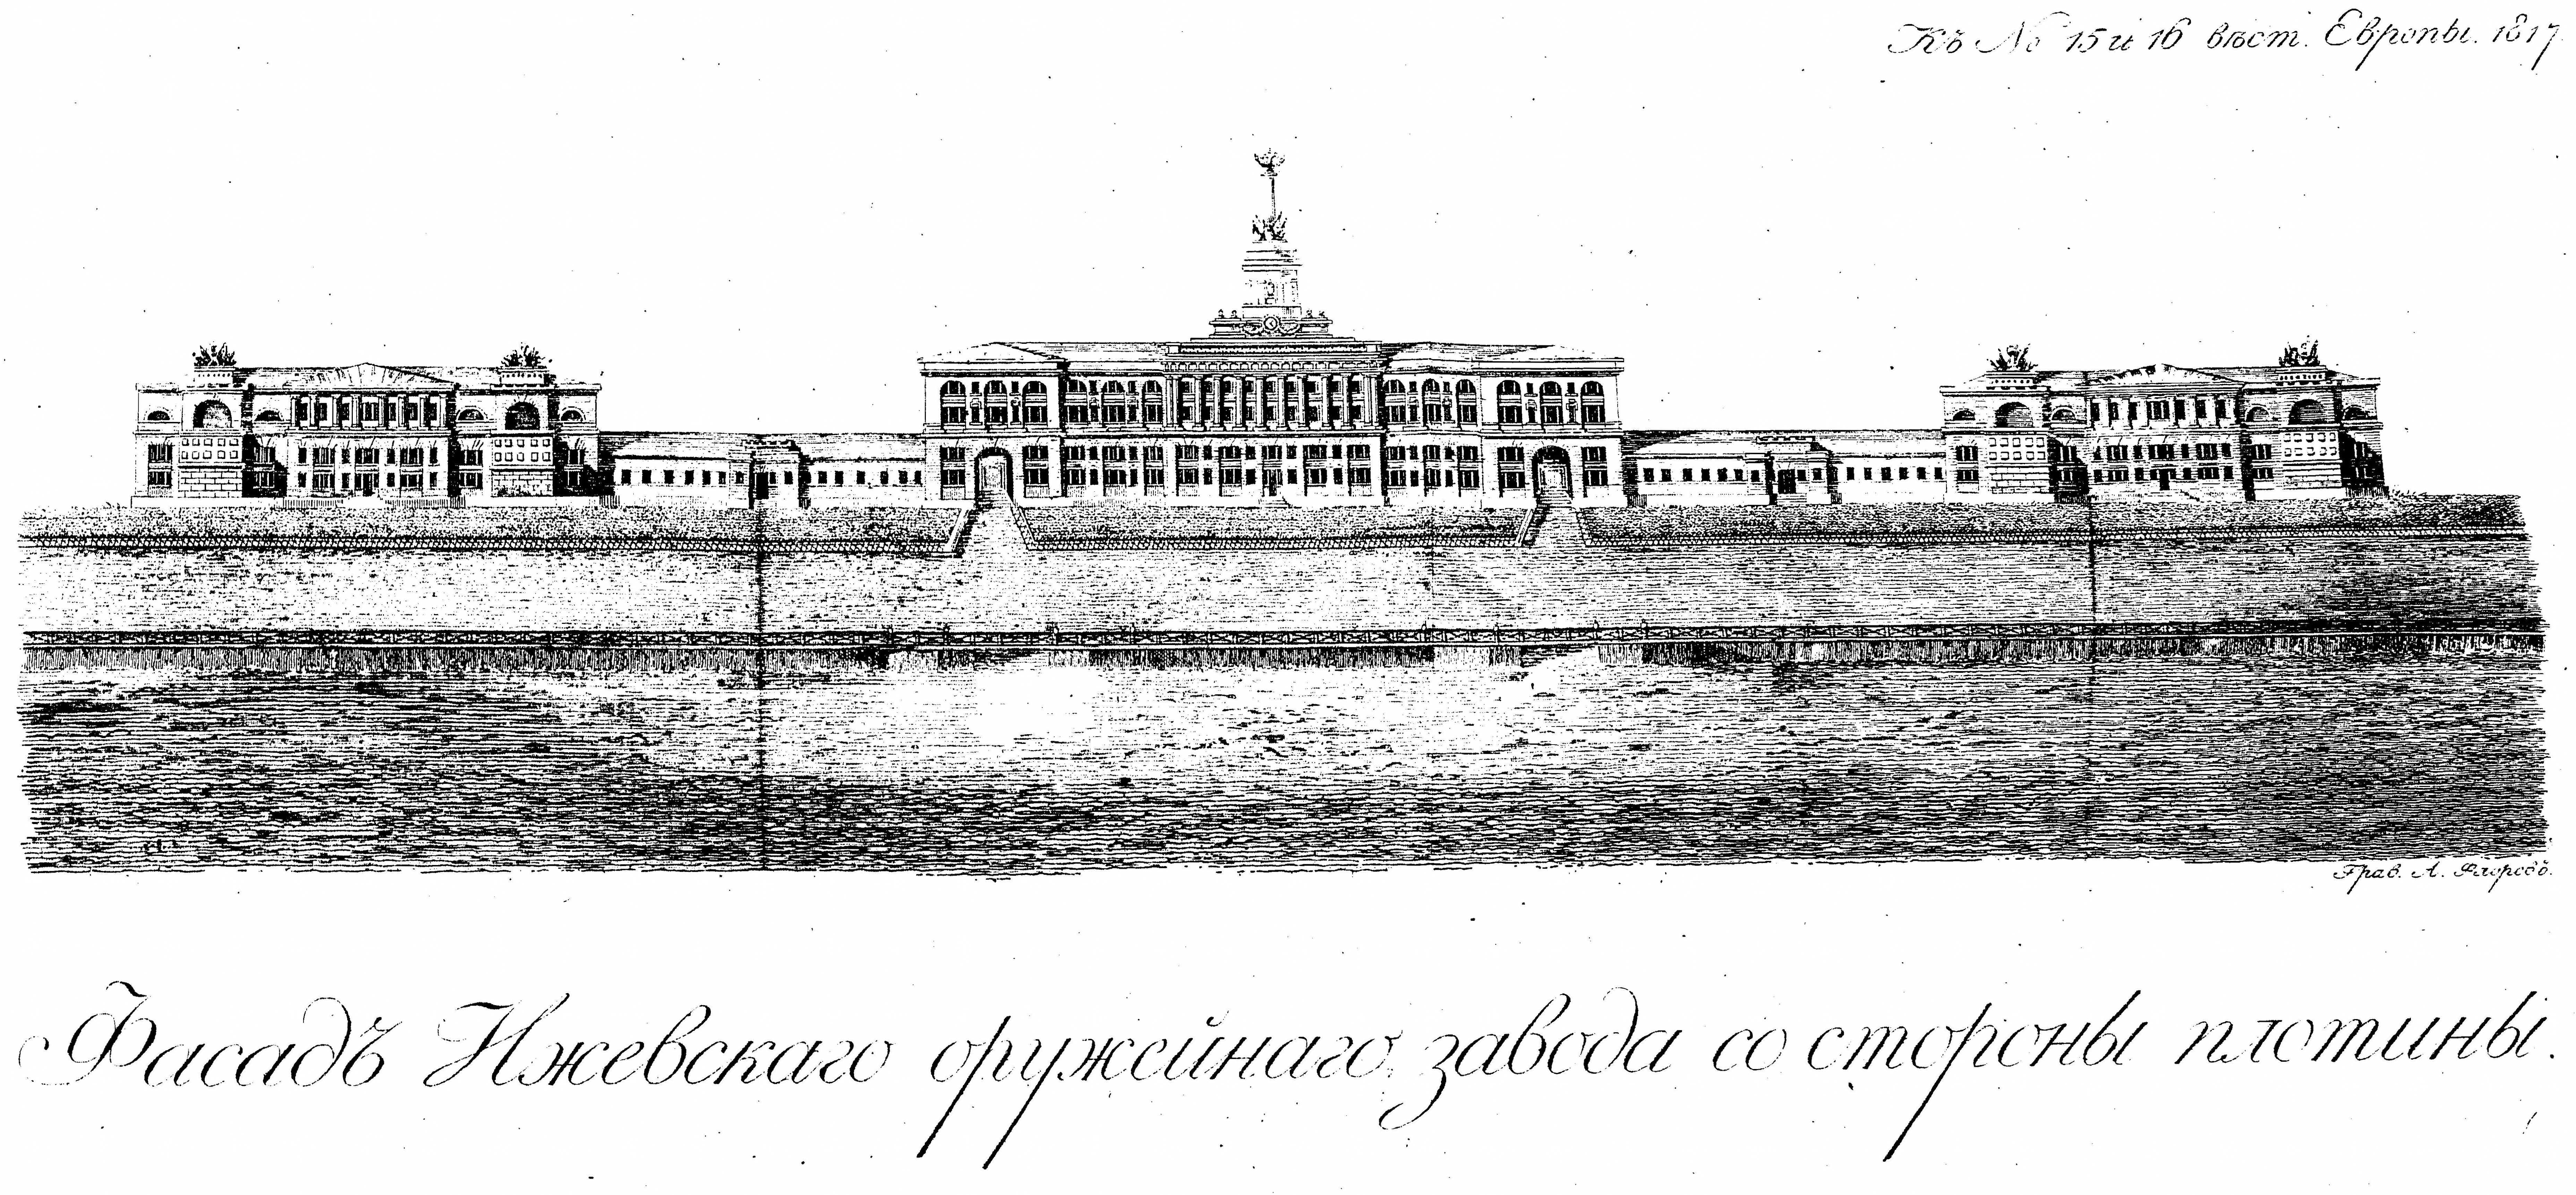 Журнал «Вестник Европы», № 15—16, 1817 г. Фасад Ижевского оружейного завода со стороны плотины